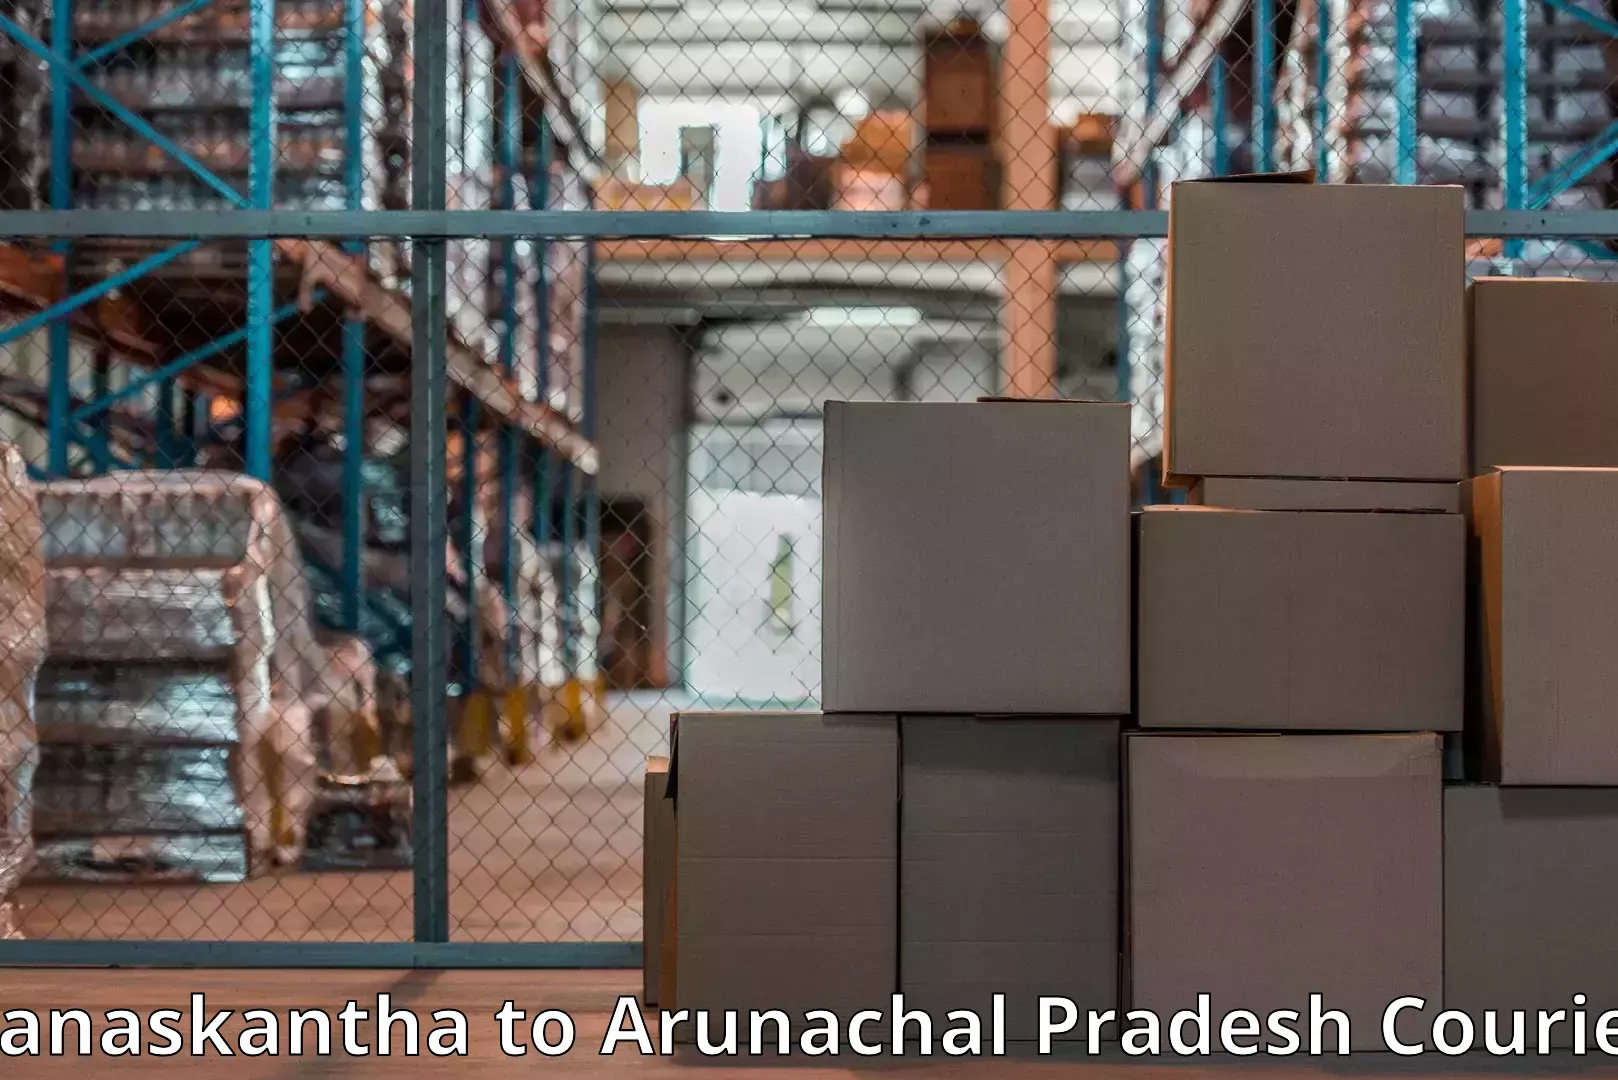 Furniture moving experts Banaskantha to Arunachal Pradesh